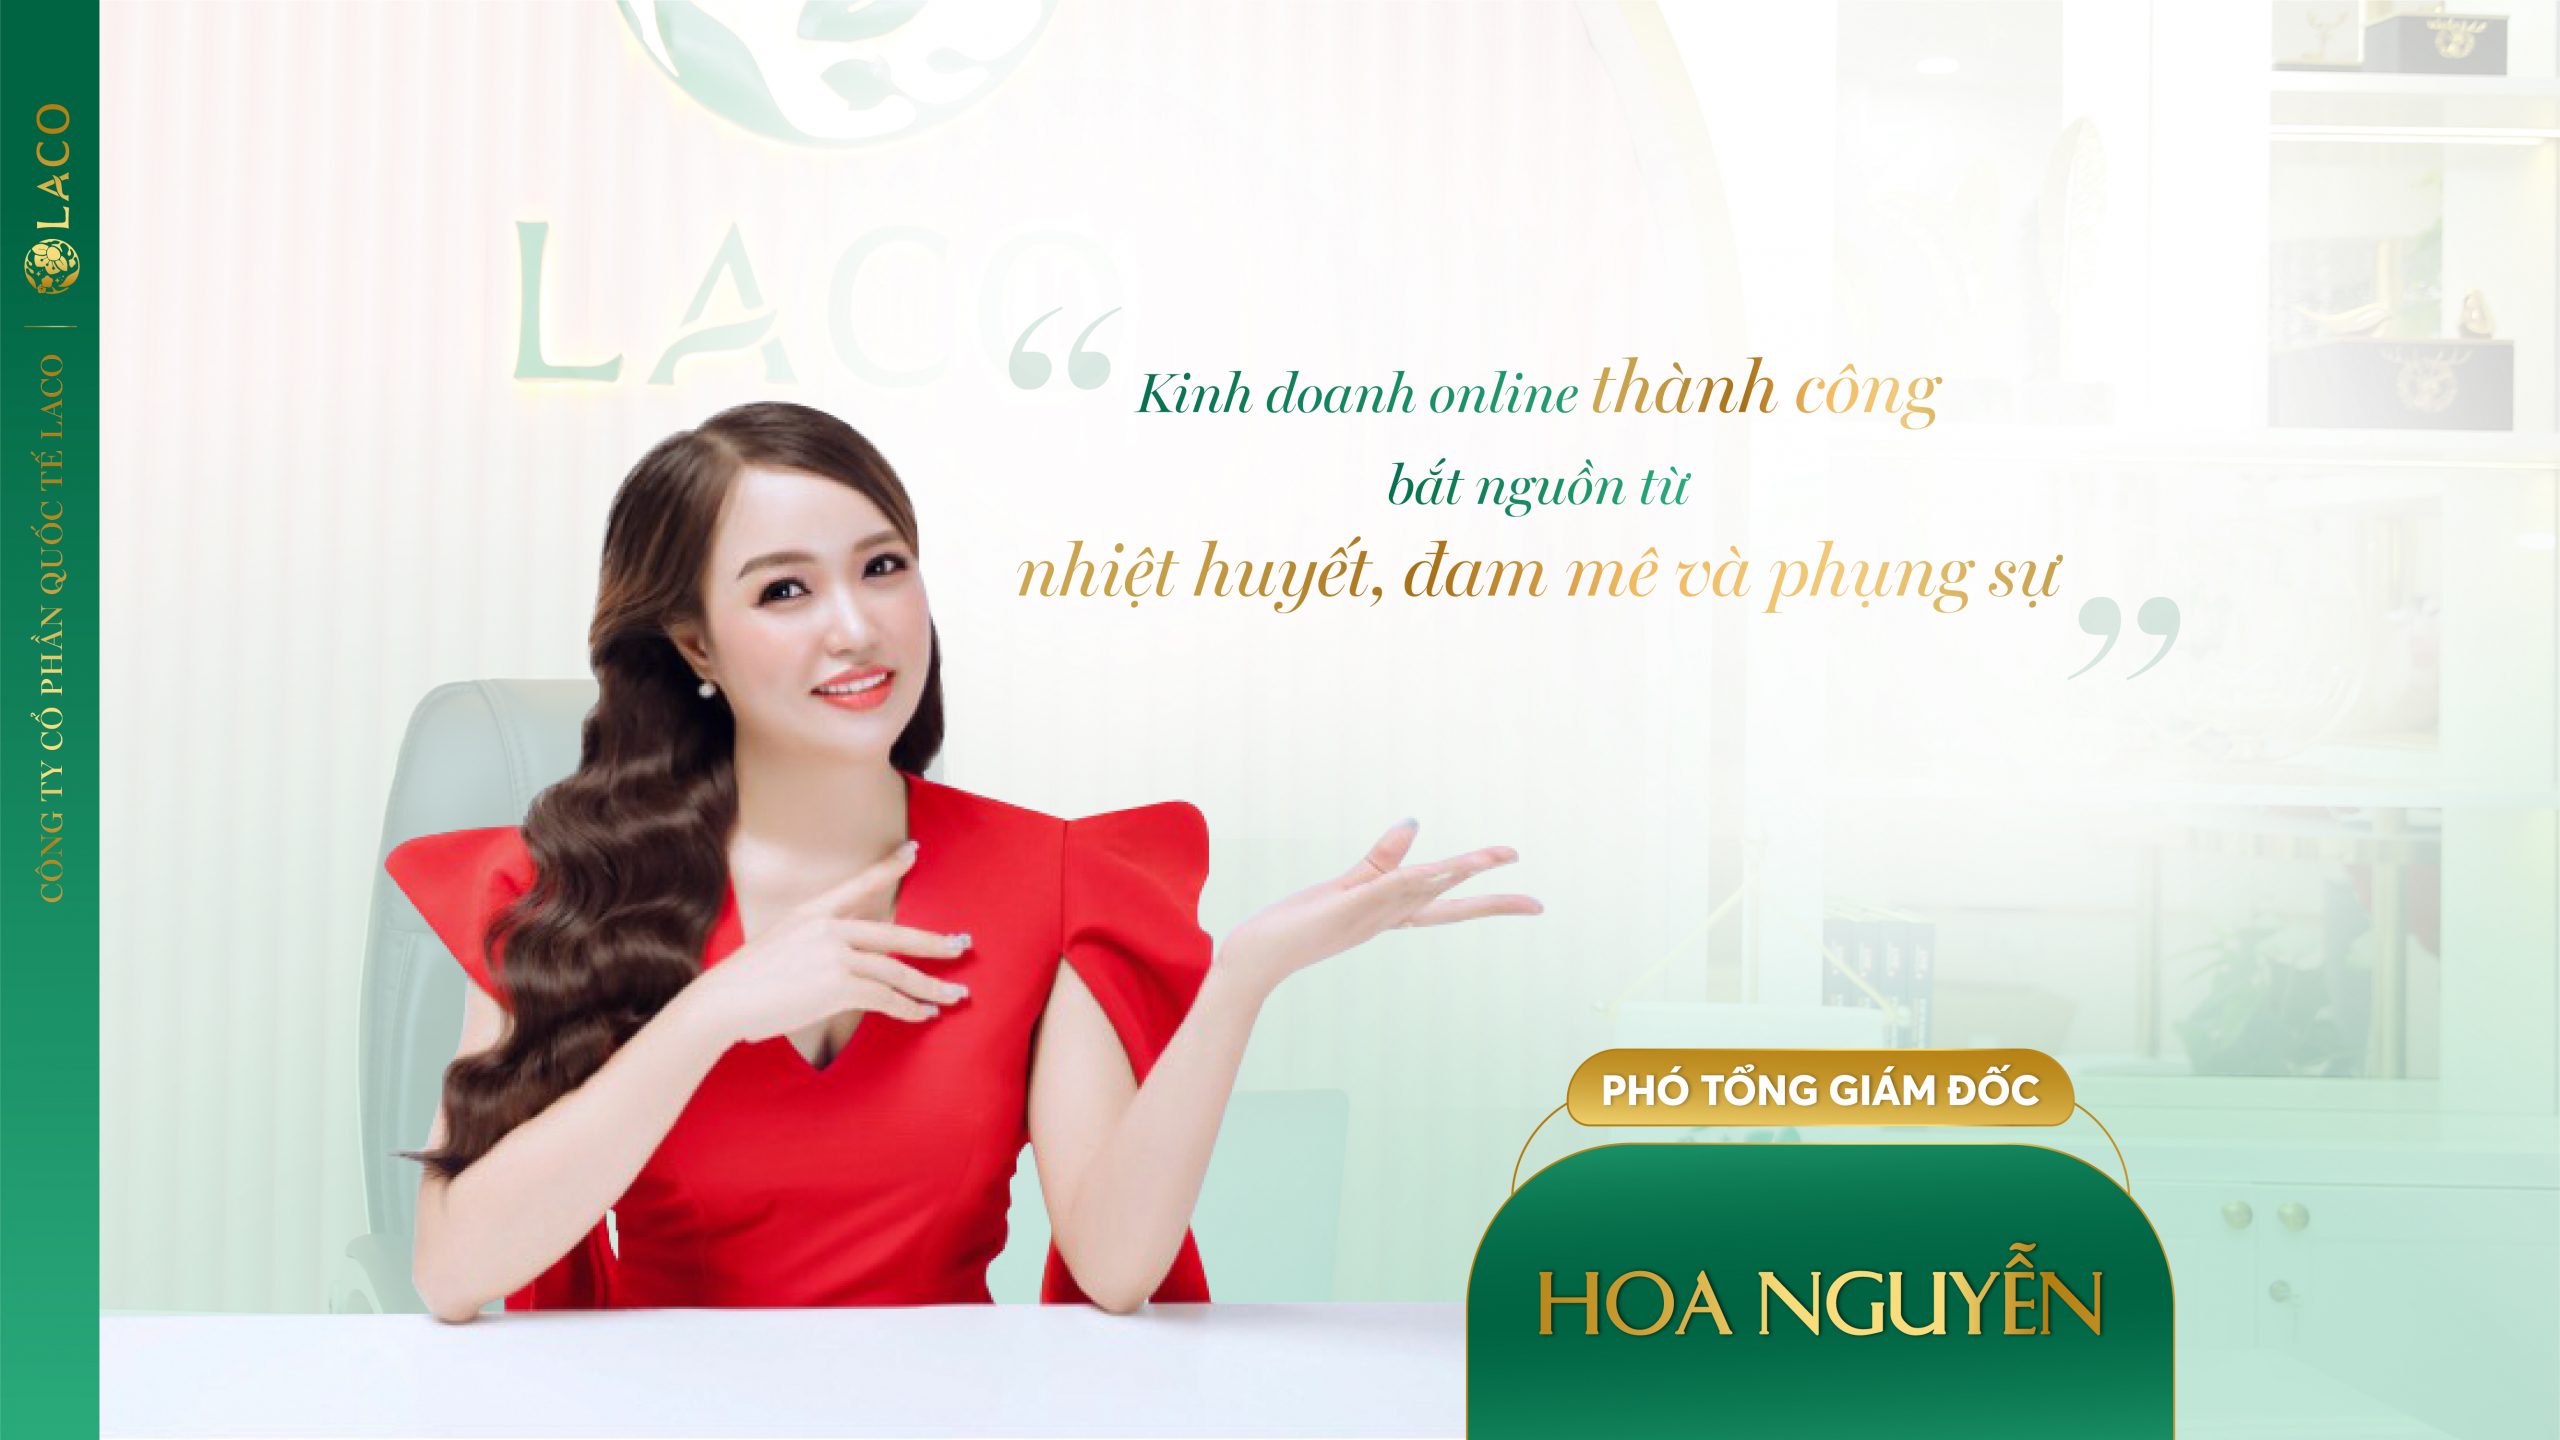 Phó Tổng Giám đốc Hoa Nguyễn: Bí quyết thành công trong kinh doanh online là nhiệt huyết, đam mê và phụng sự